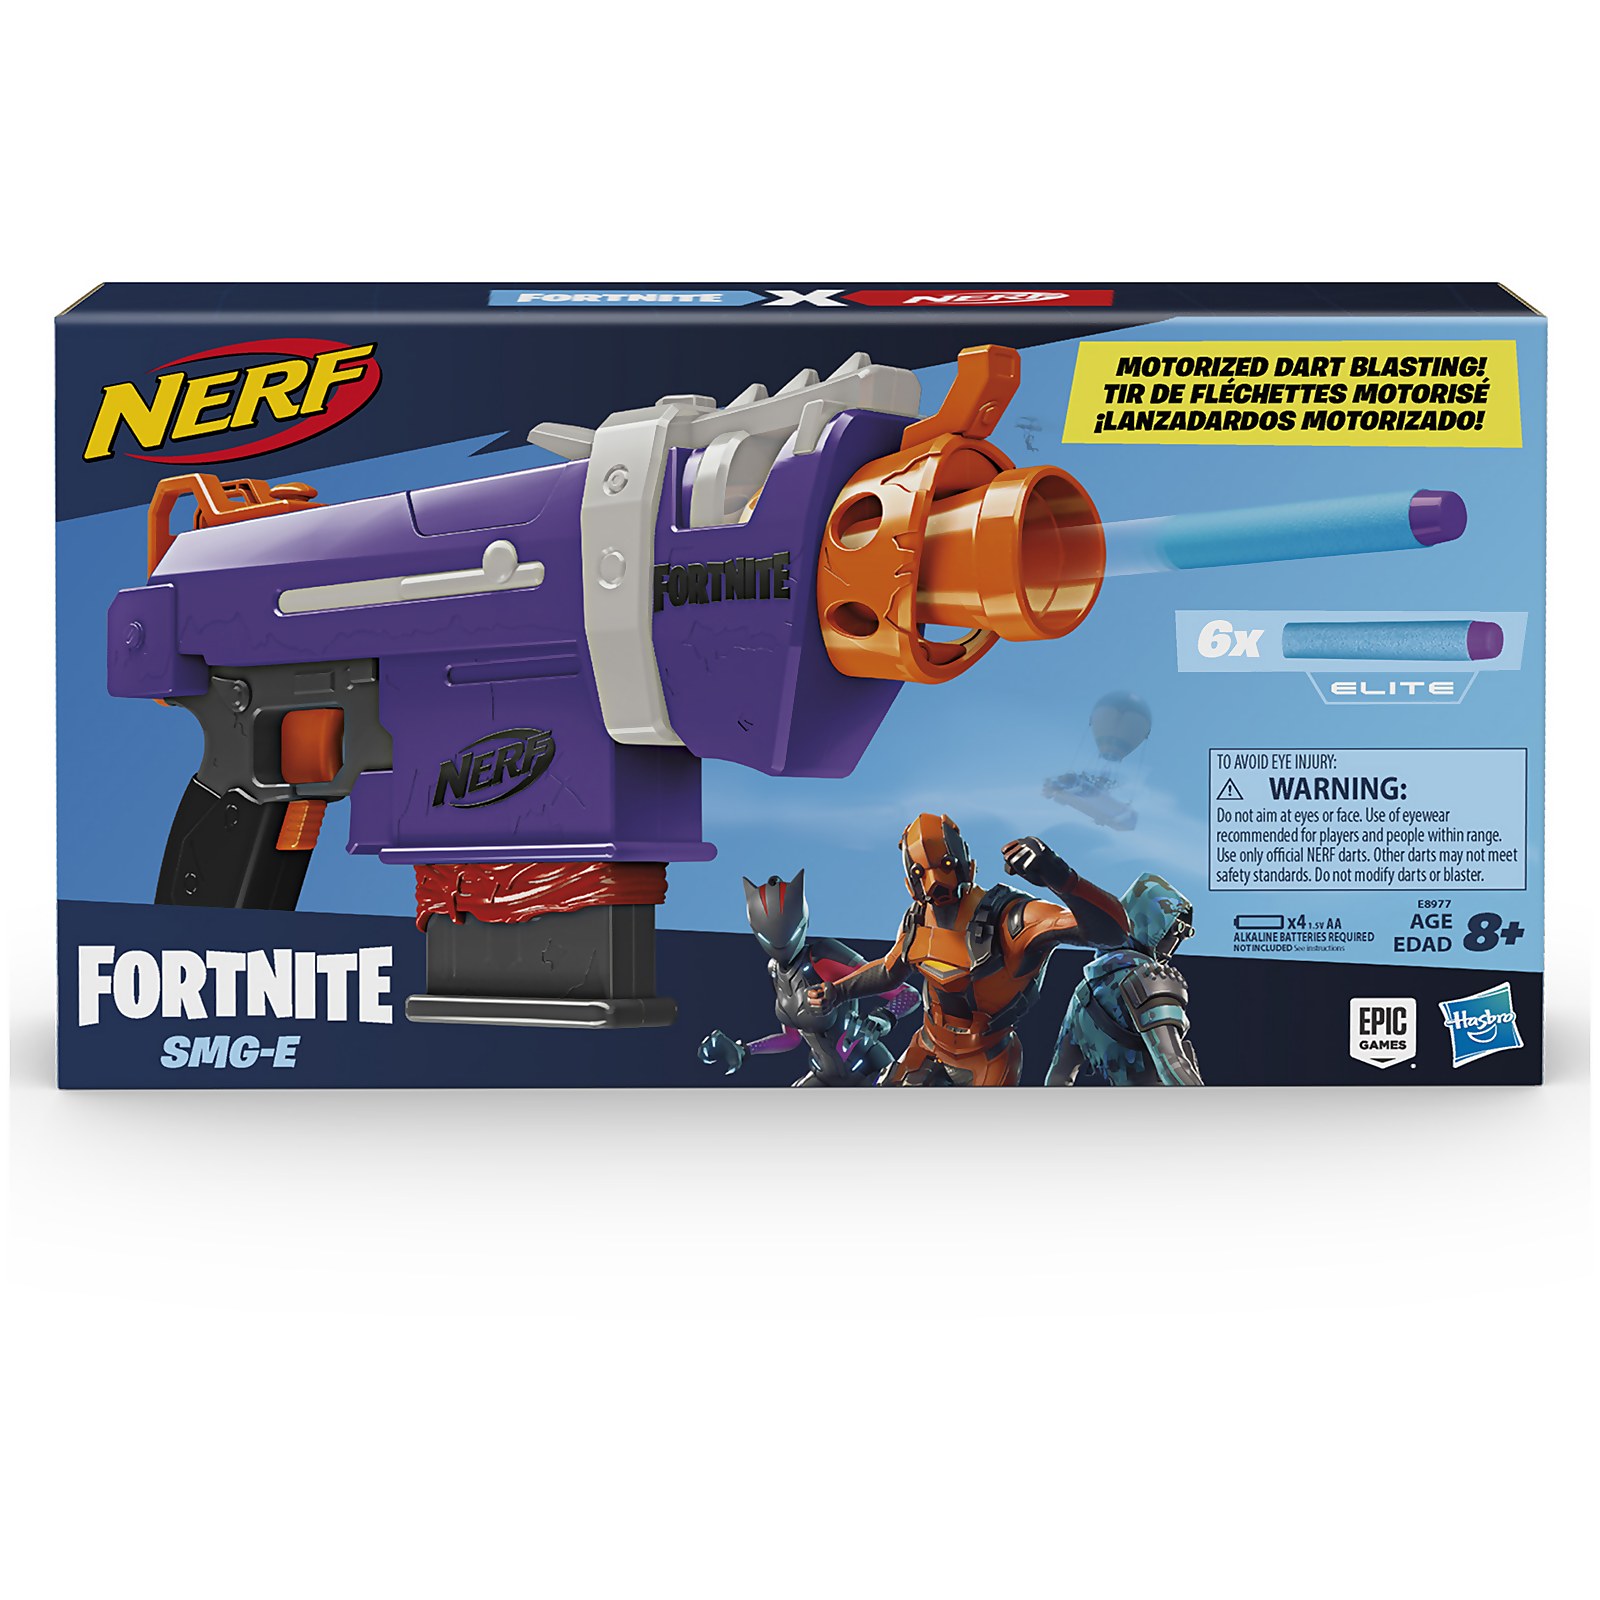 NERF Fortnite SMG Blaster